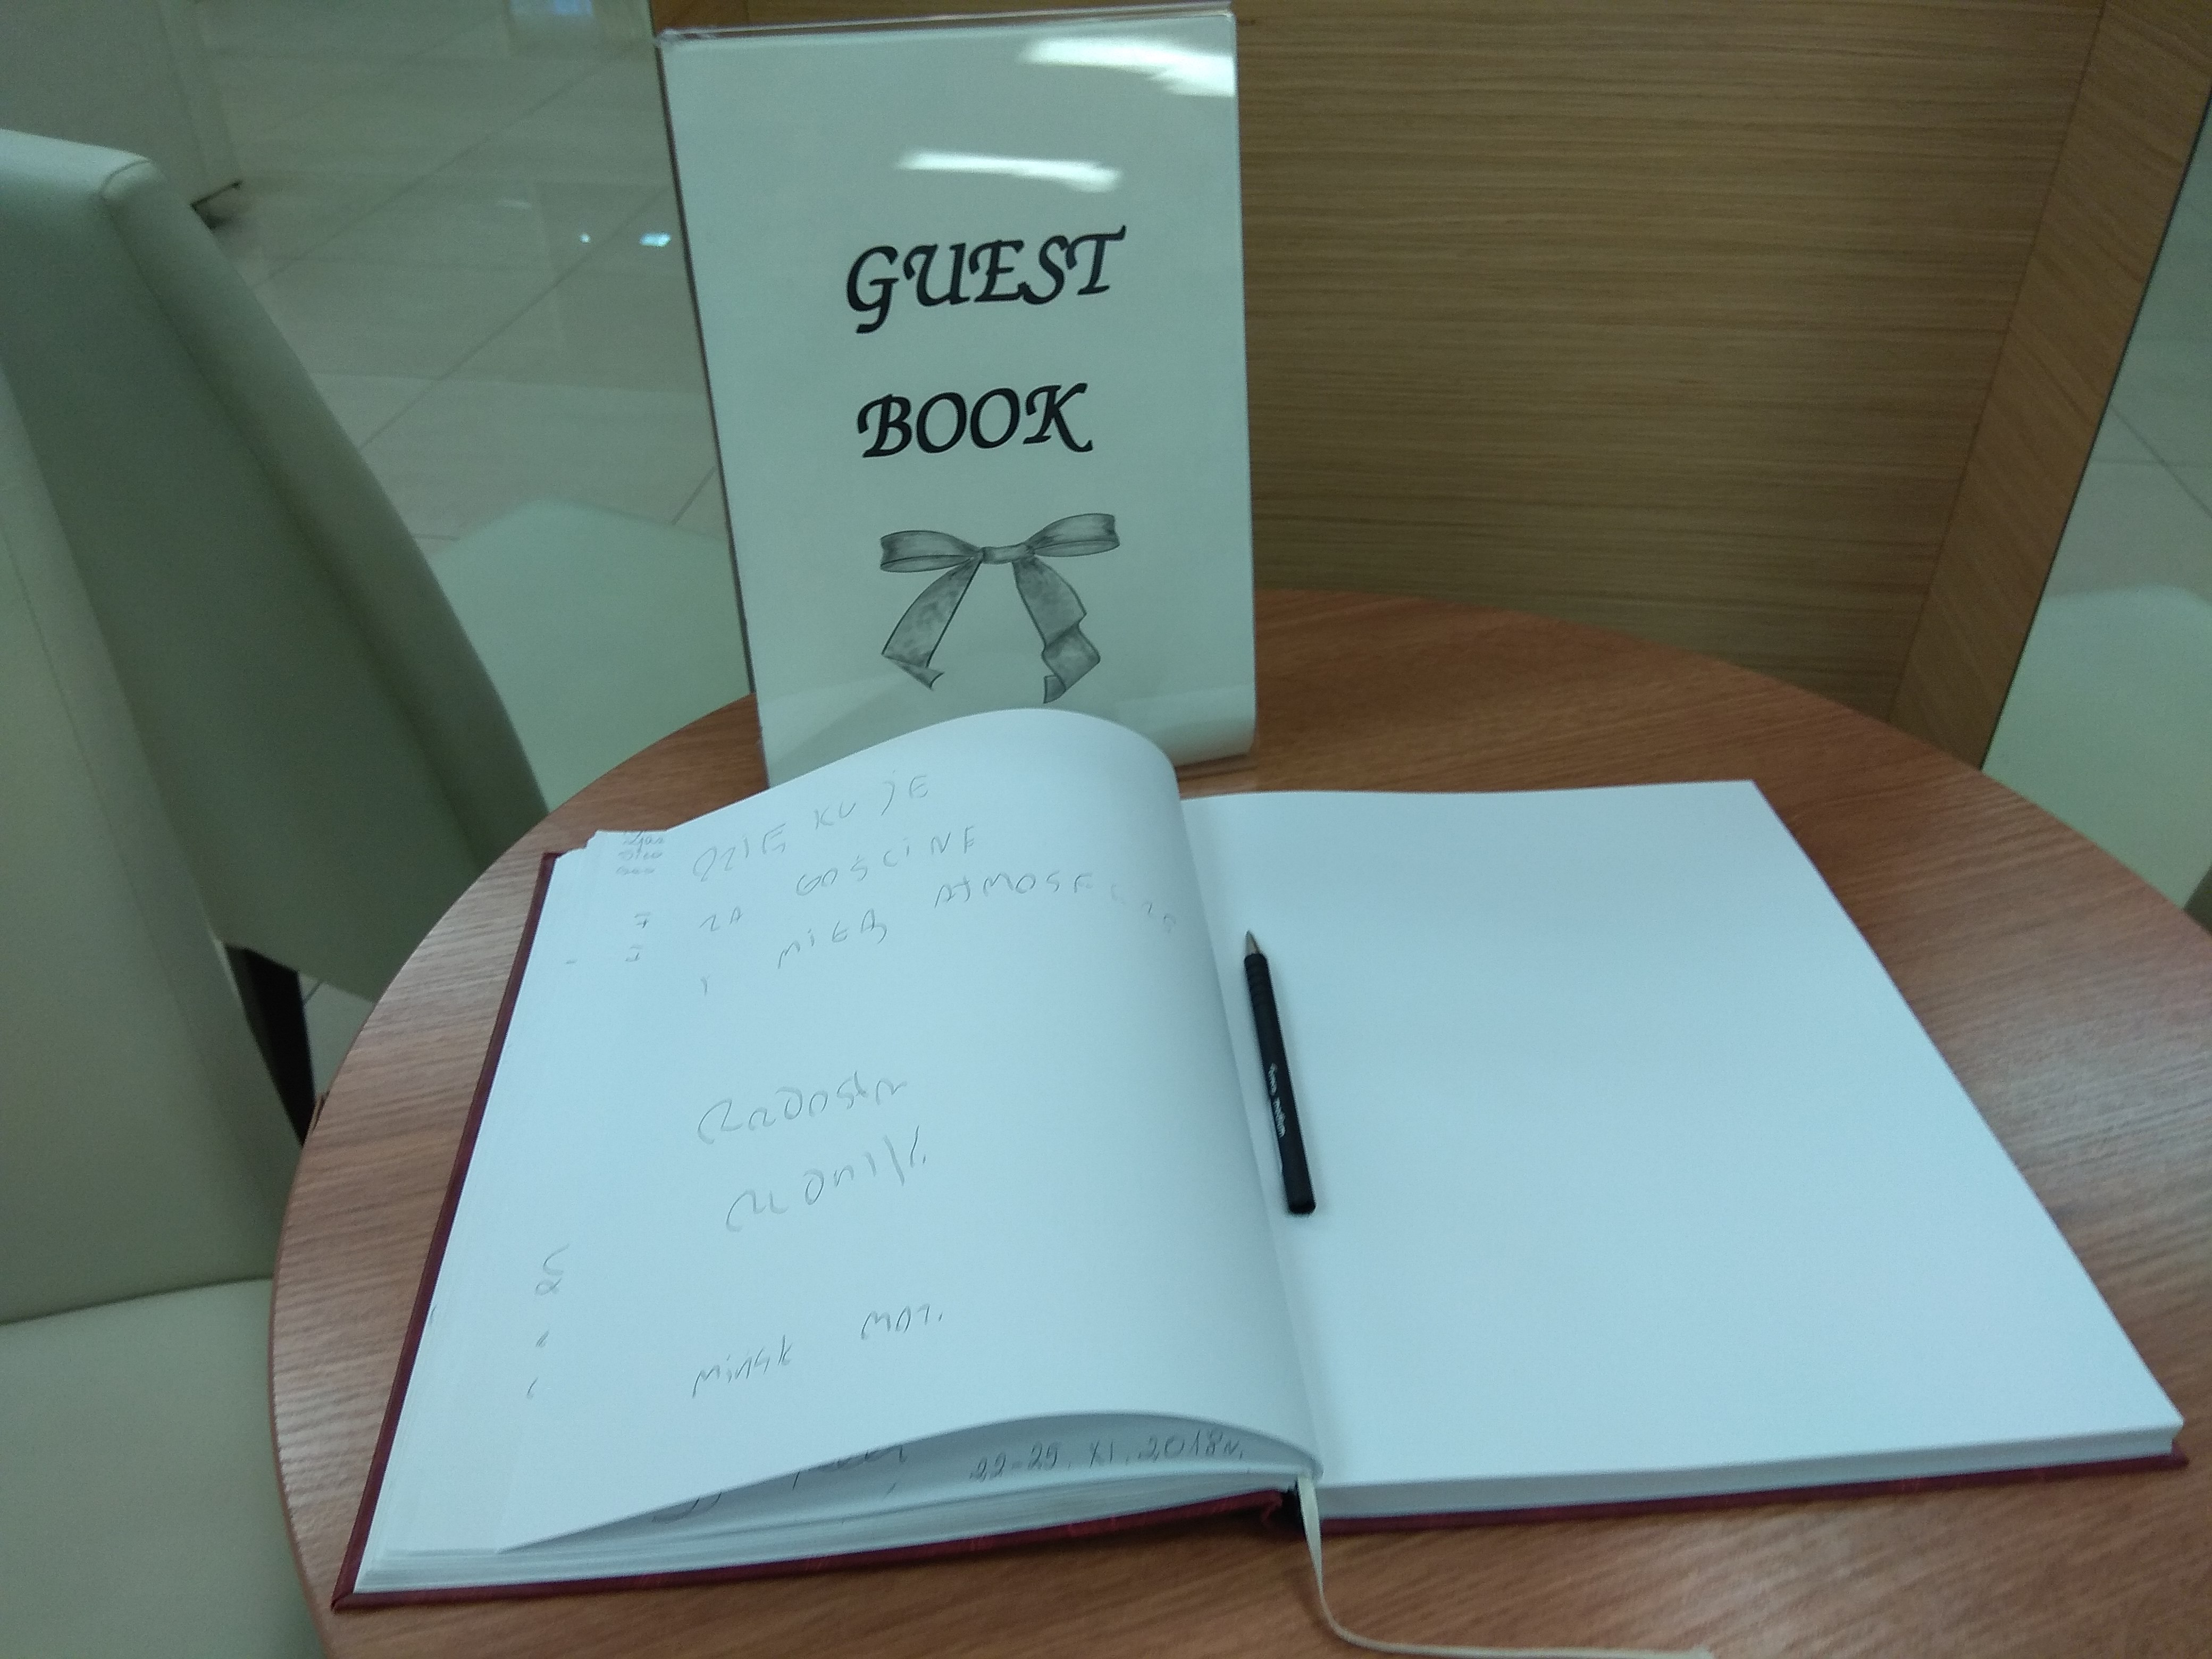 Biała rozłożona księga z czarnym długopisem, a przy niej stojąca tablica z napisem Guest Book.